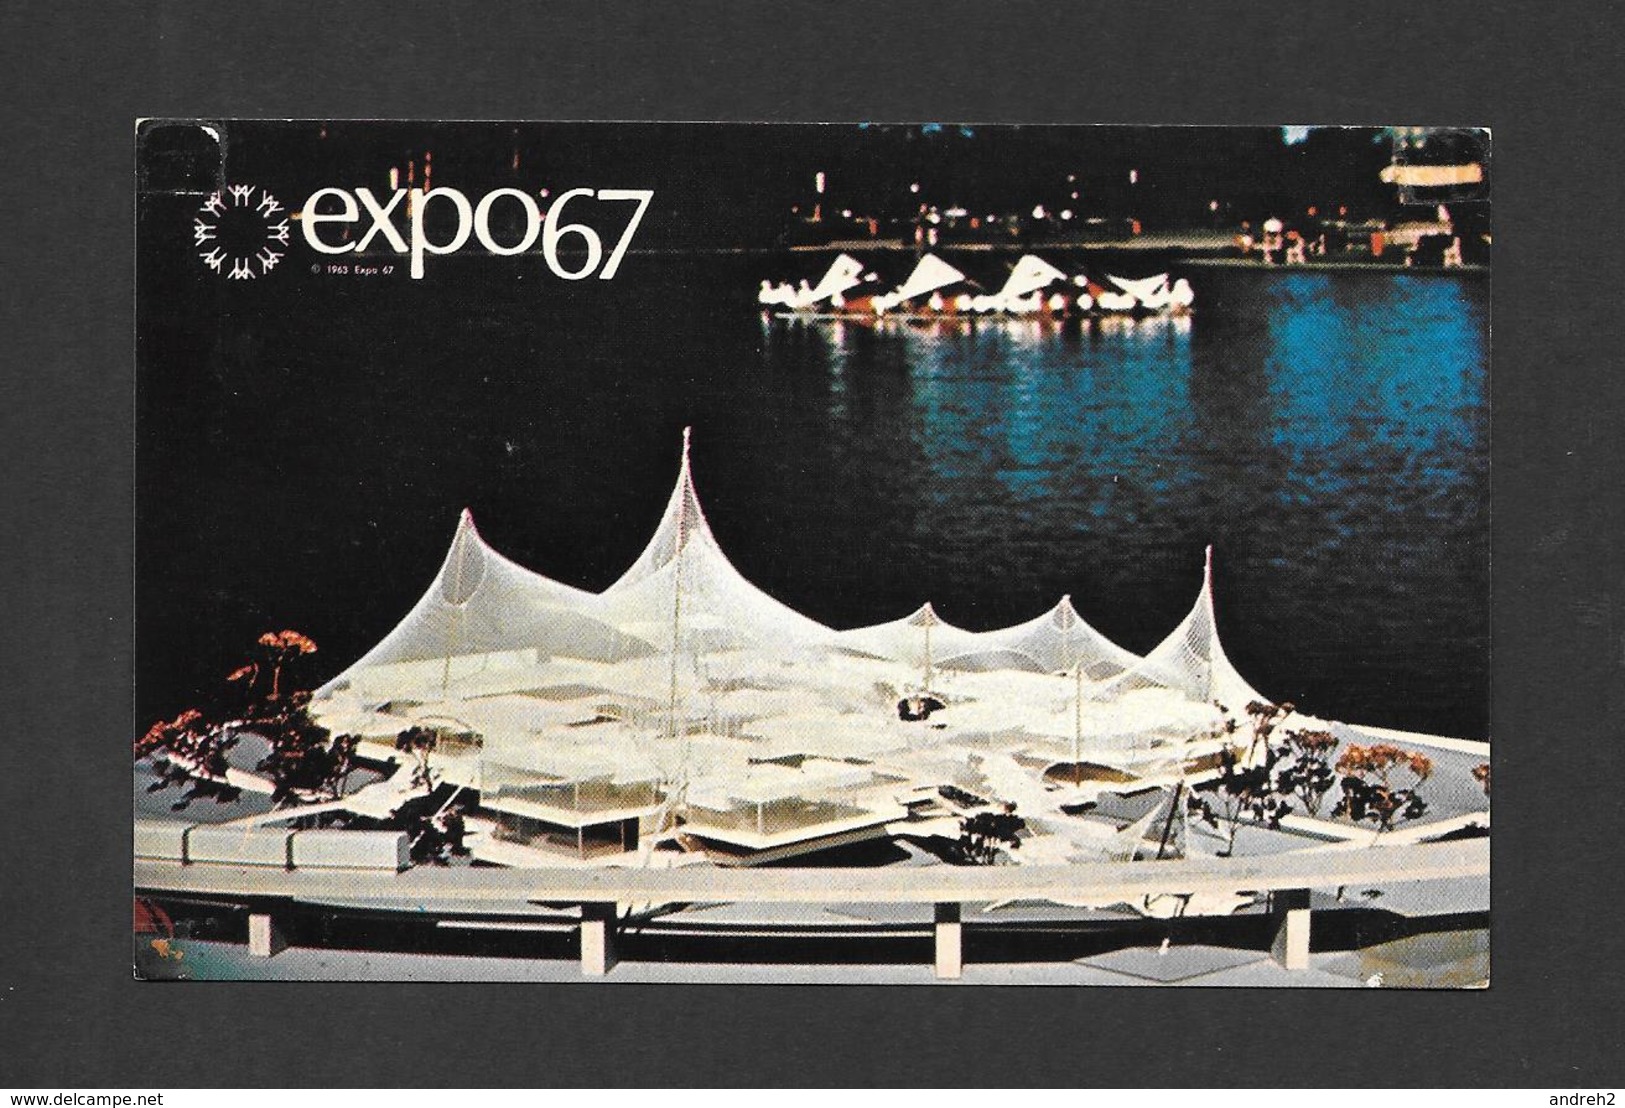 EXPOSITION - EXPO67 - EXPO 67 - MONTRÉAL CANADA  LE PAVILLON DE LA REPUBLIQUE FEDERALE D'ALLEMAGNE - PAVILION OF GERMANY - Expositions